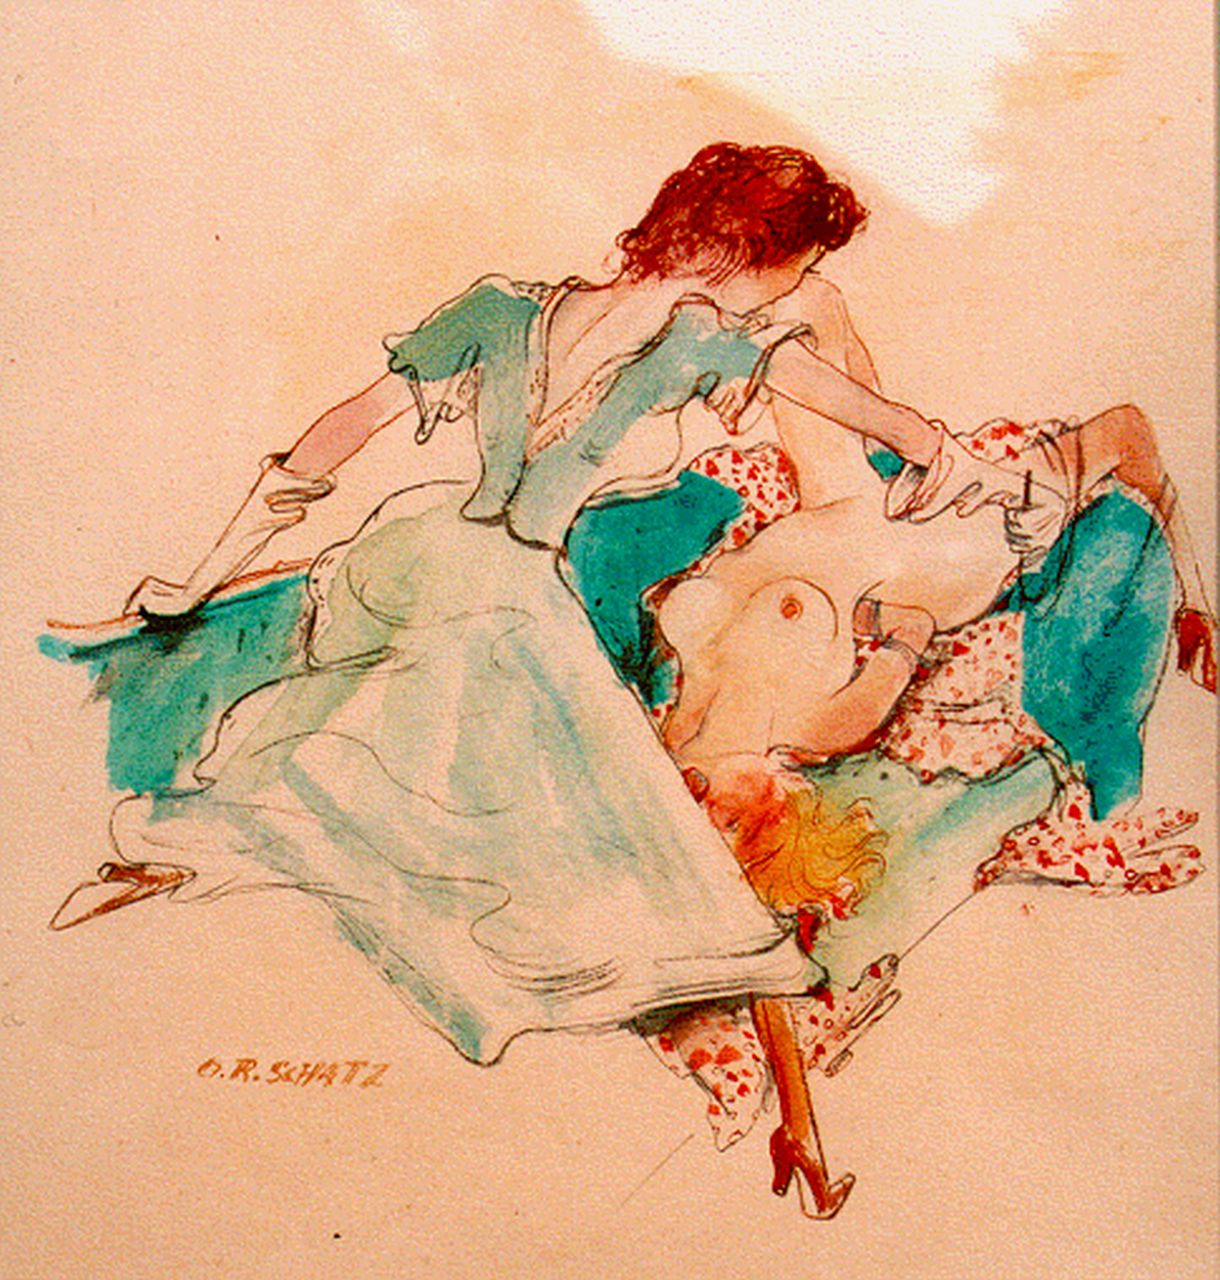 Schatz O.R.  | Otto Rudolf Schatz, Erotische scene, watercolour on paper 29.0 x 27.0 cm, gesigneerd rechtsonder